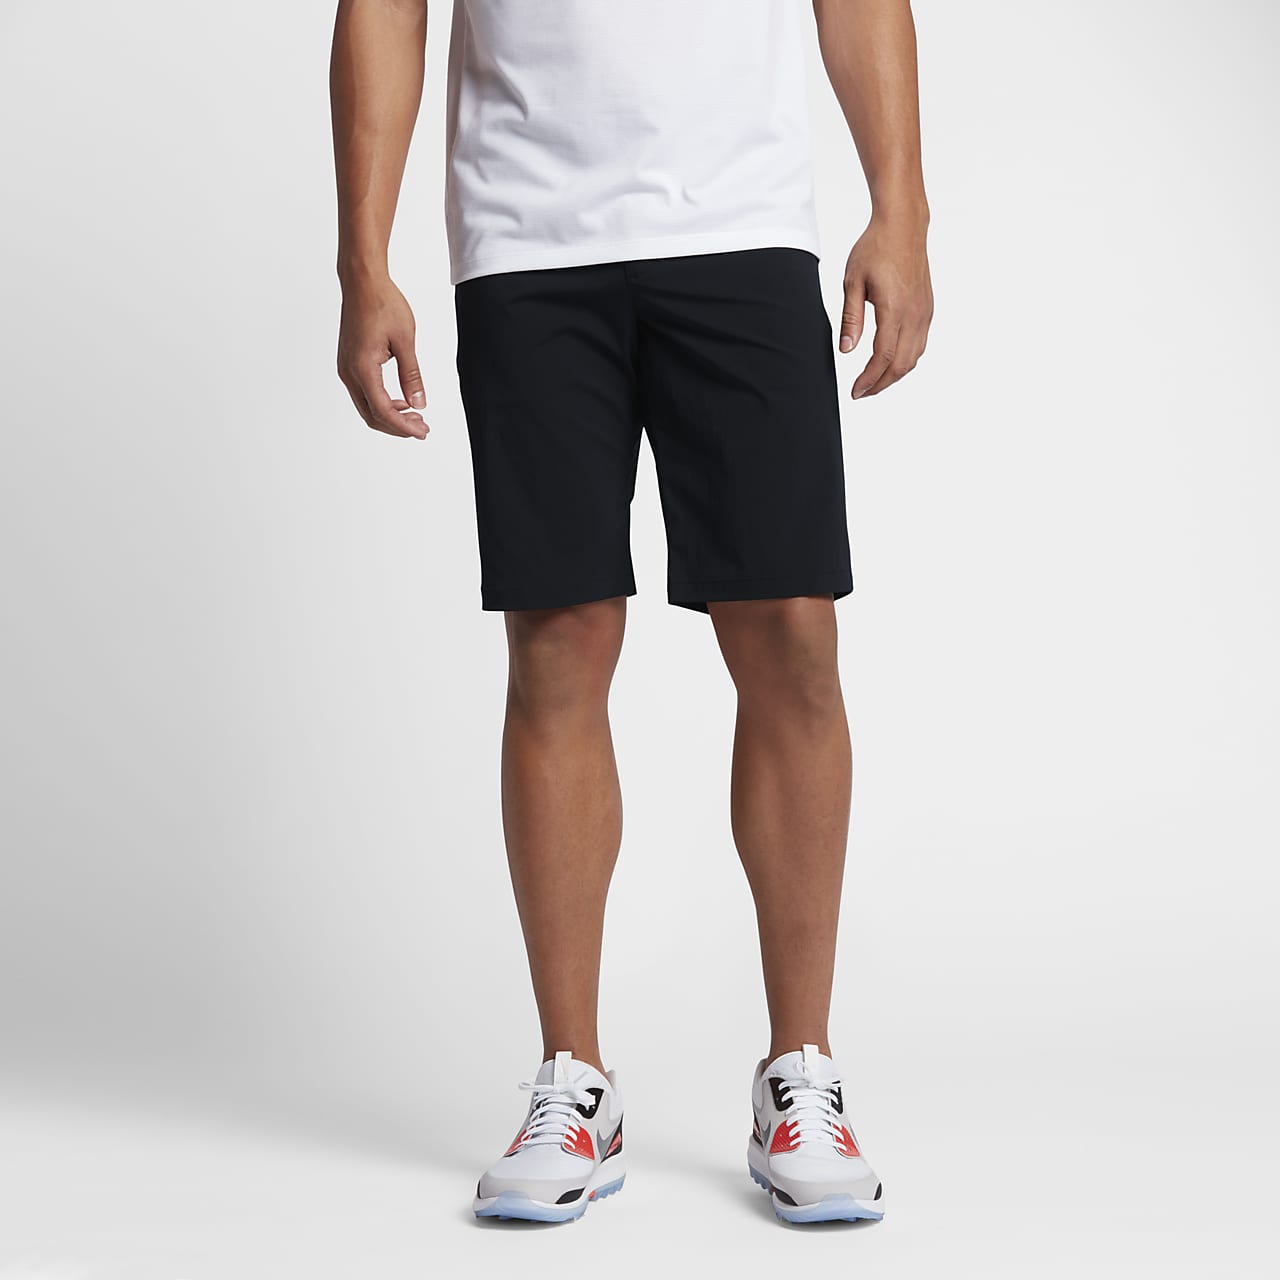 Nike Dry Desert Men's Golf Shorts